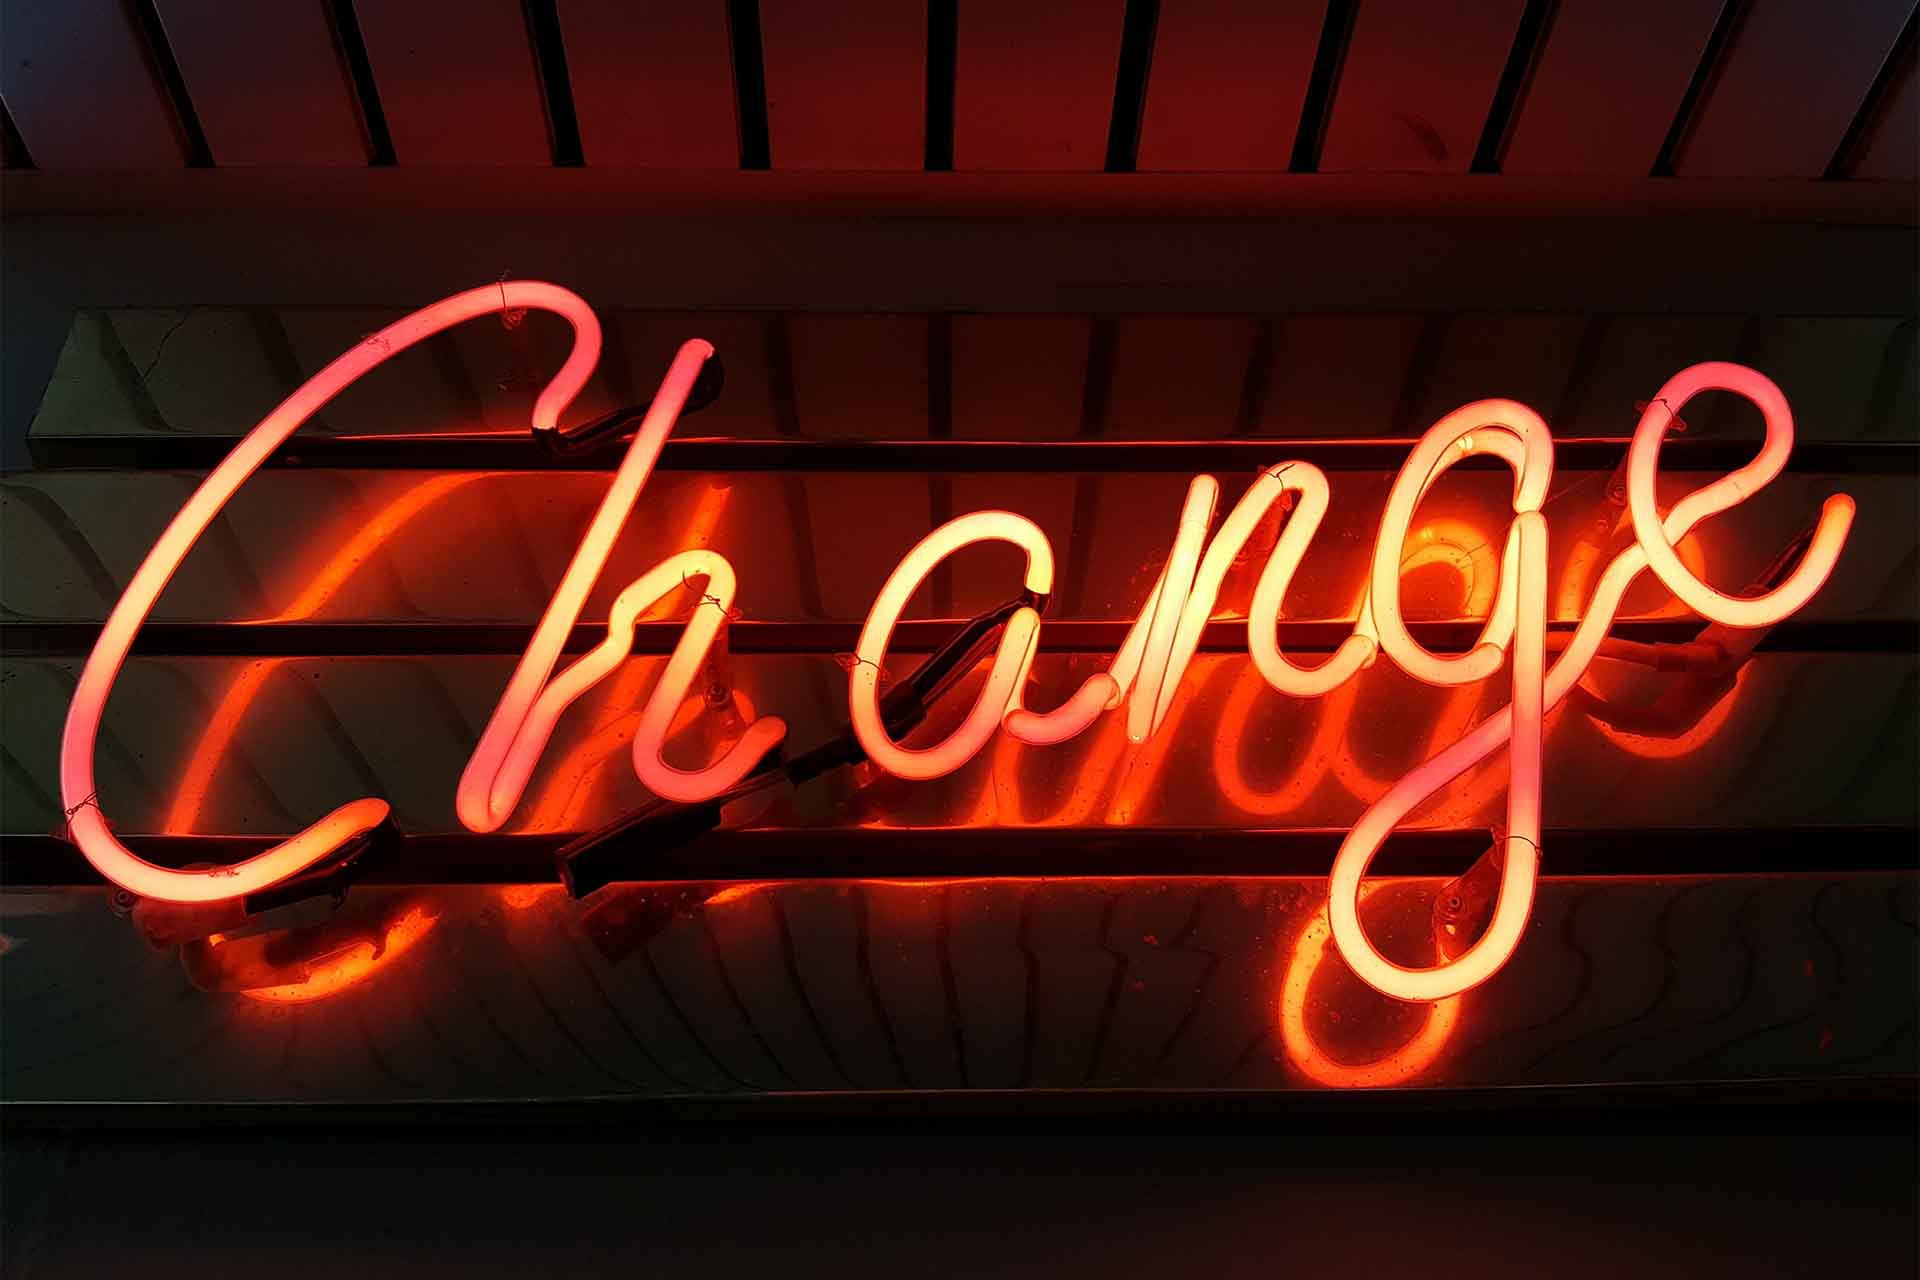 t2informatik Blog: Change Management is dead - long live continuous change